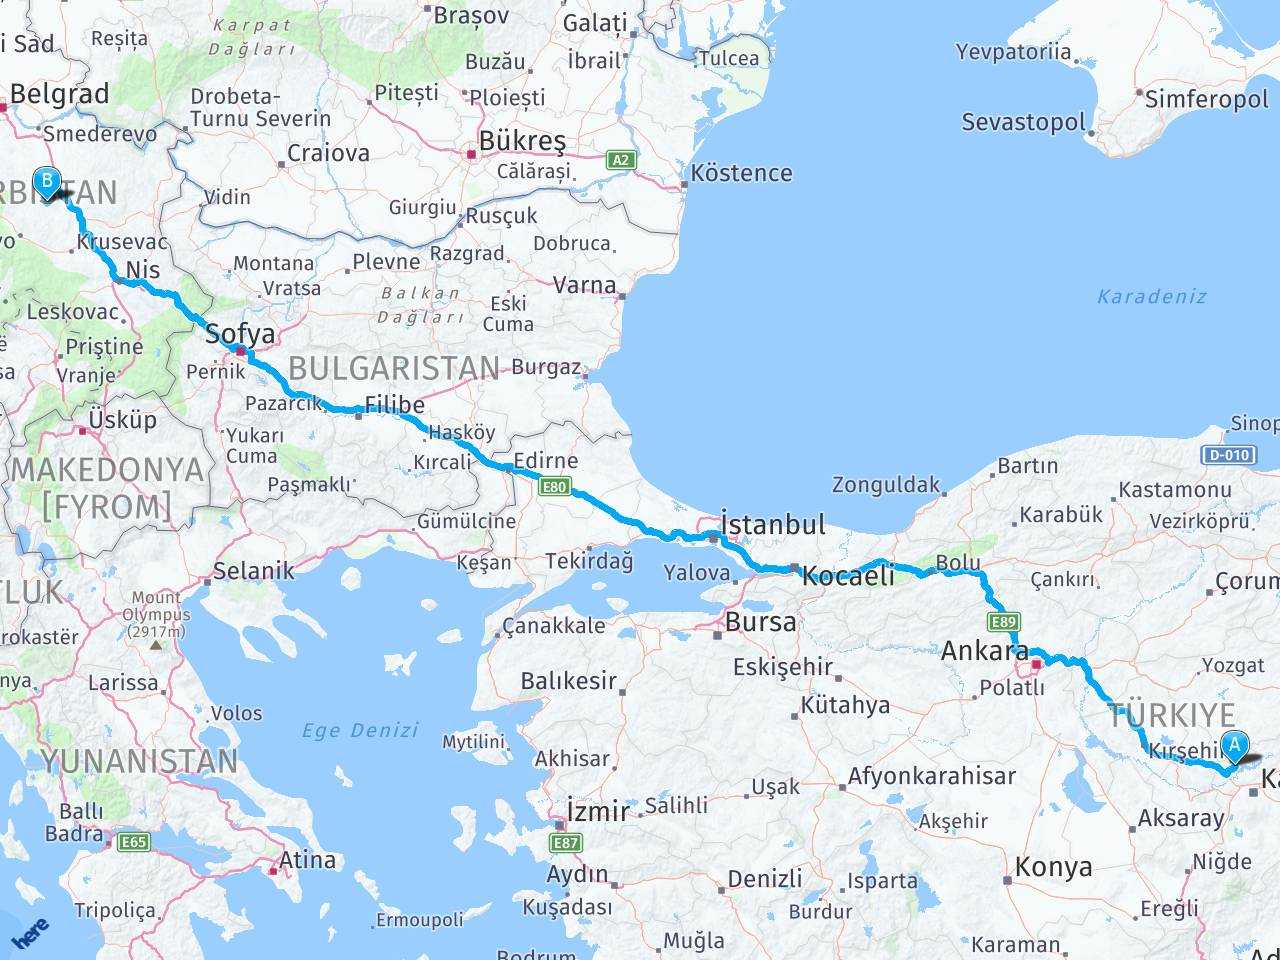 sirbistan turkiye arasi mesafe sirbistan turkiye yol haritasi sirbistan turkiye kac saat kac km